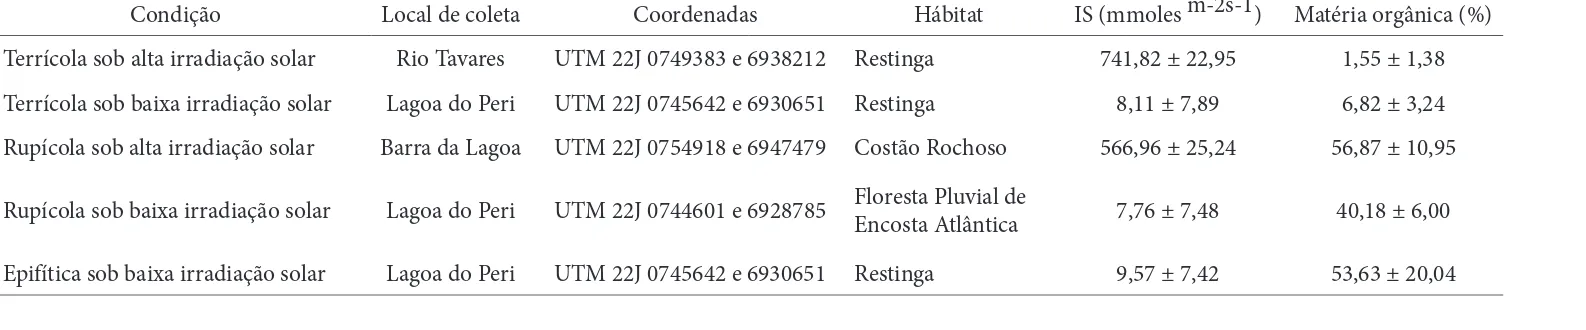 Tabela 1. Condições analisadas, local de coleta, coordenadas, hábitat, irradiância solar (IS) e teor de matéria orgânica das plantas de Aechmea lindenii (E